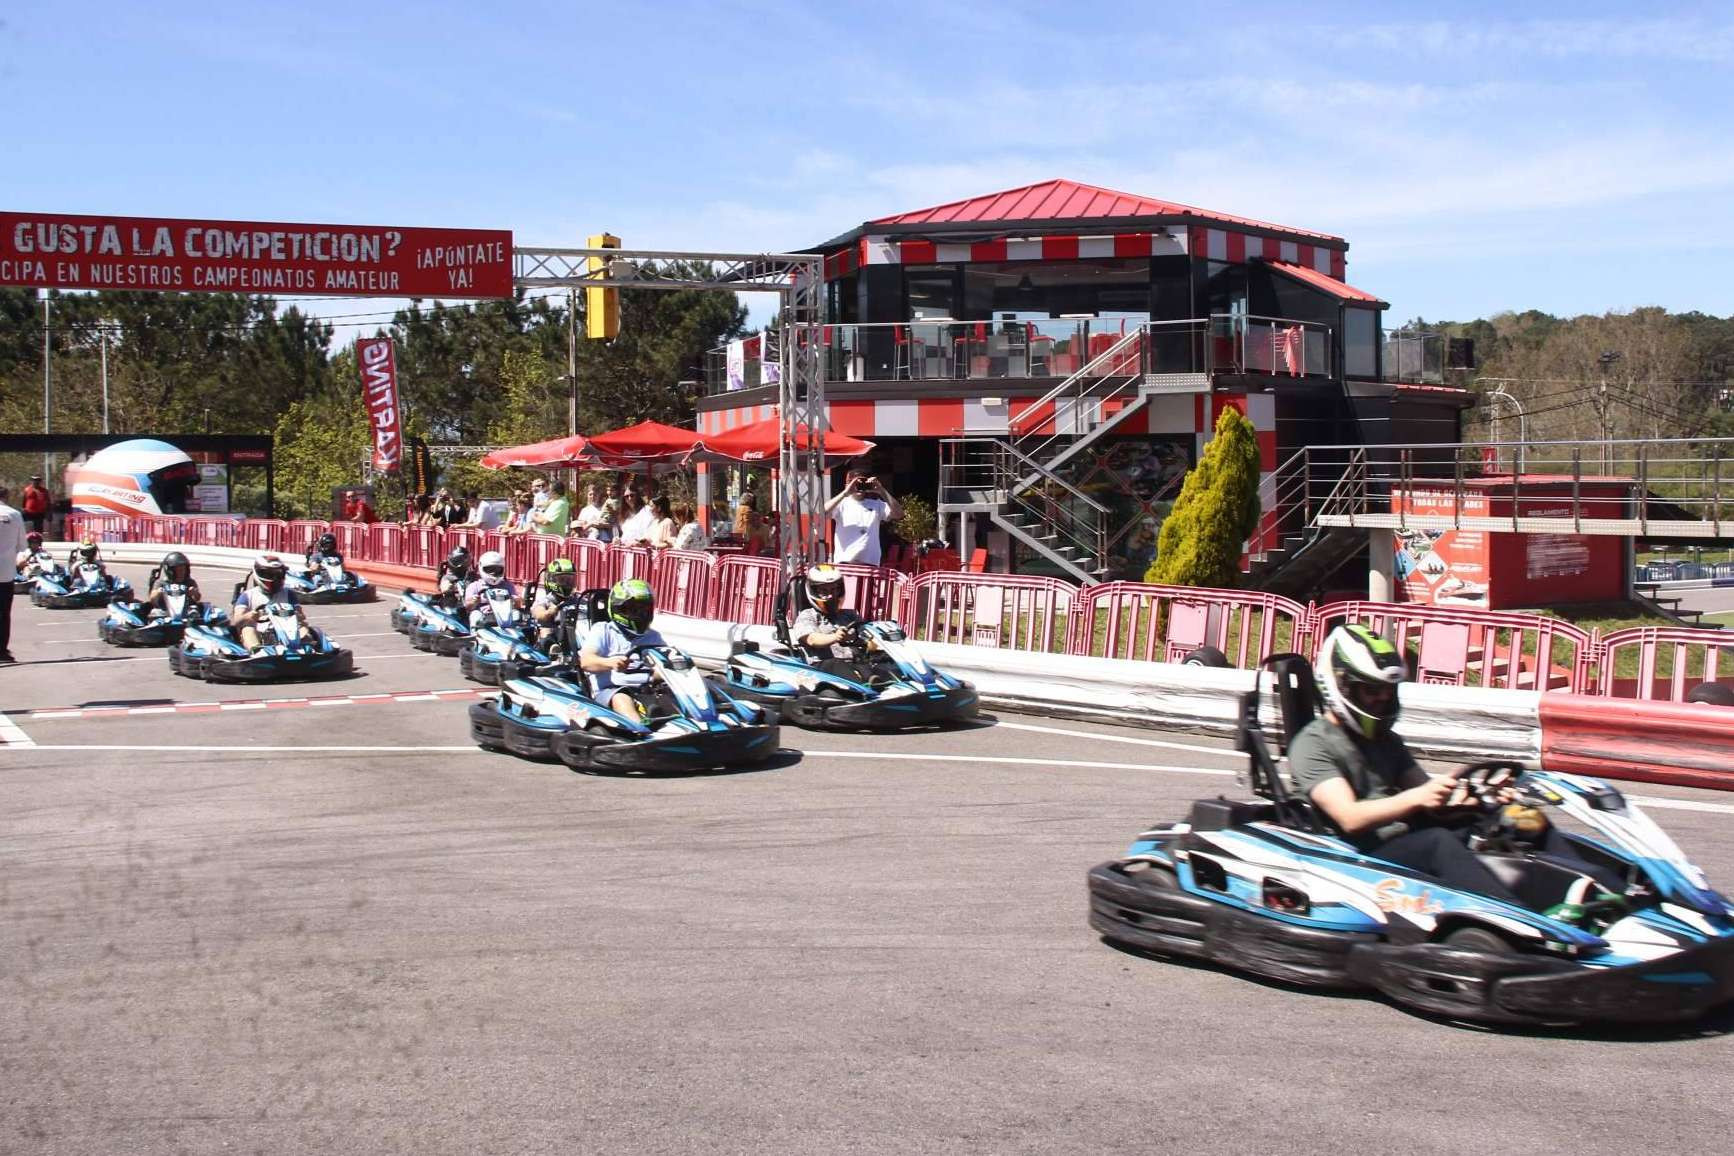  Racing Dakart ofrece a sus visitantes la emoción de ser un piloto de carreras mediante sus pistas de karting 